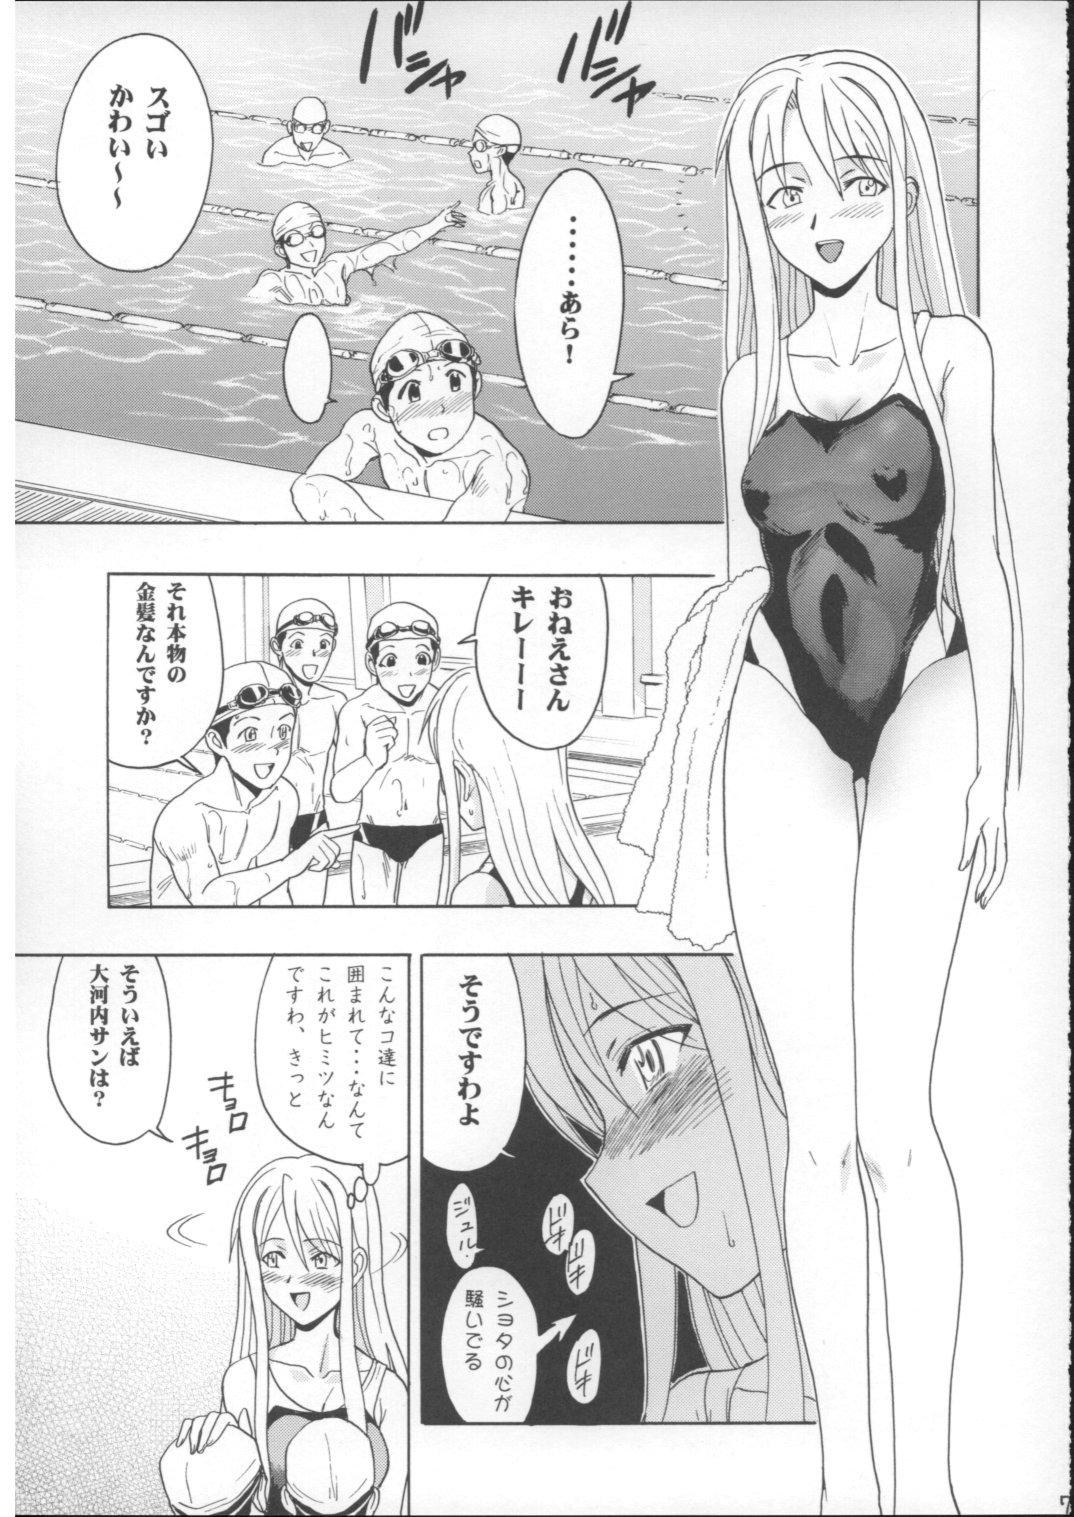 Rub Mahomizu - Mahou sensei negima Caseiro - Page 6